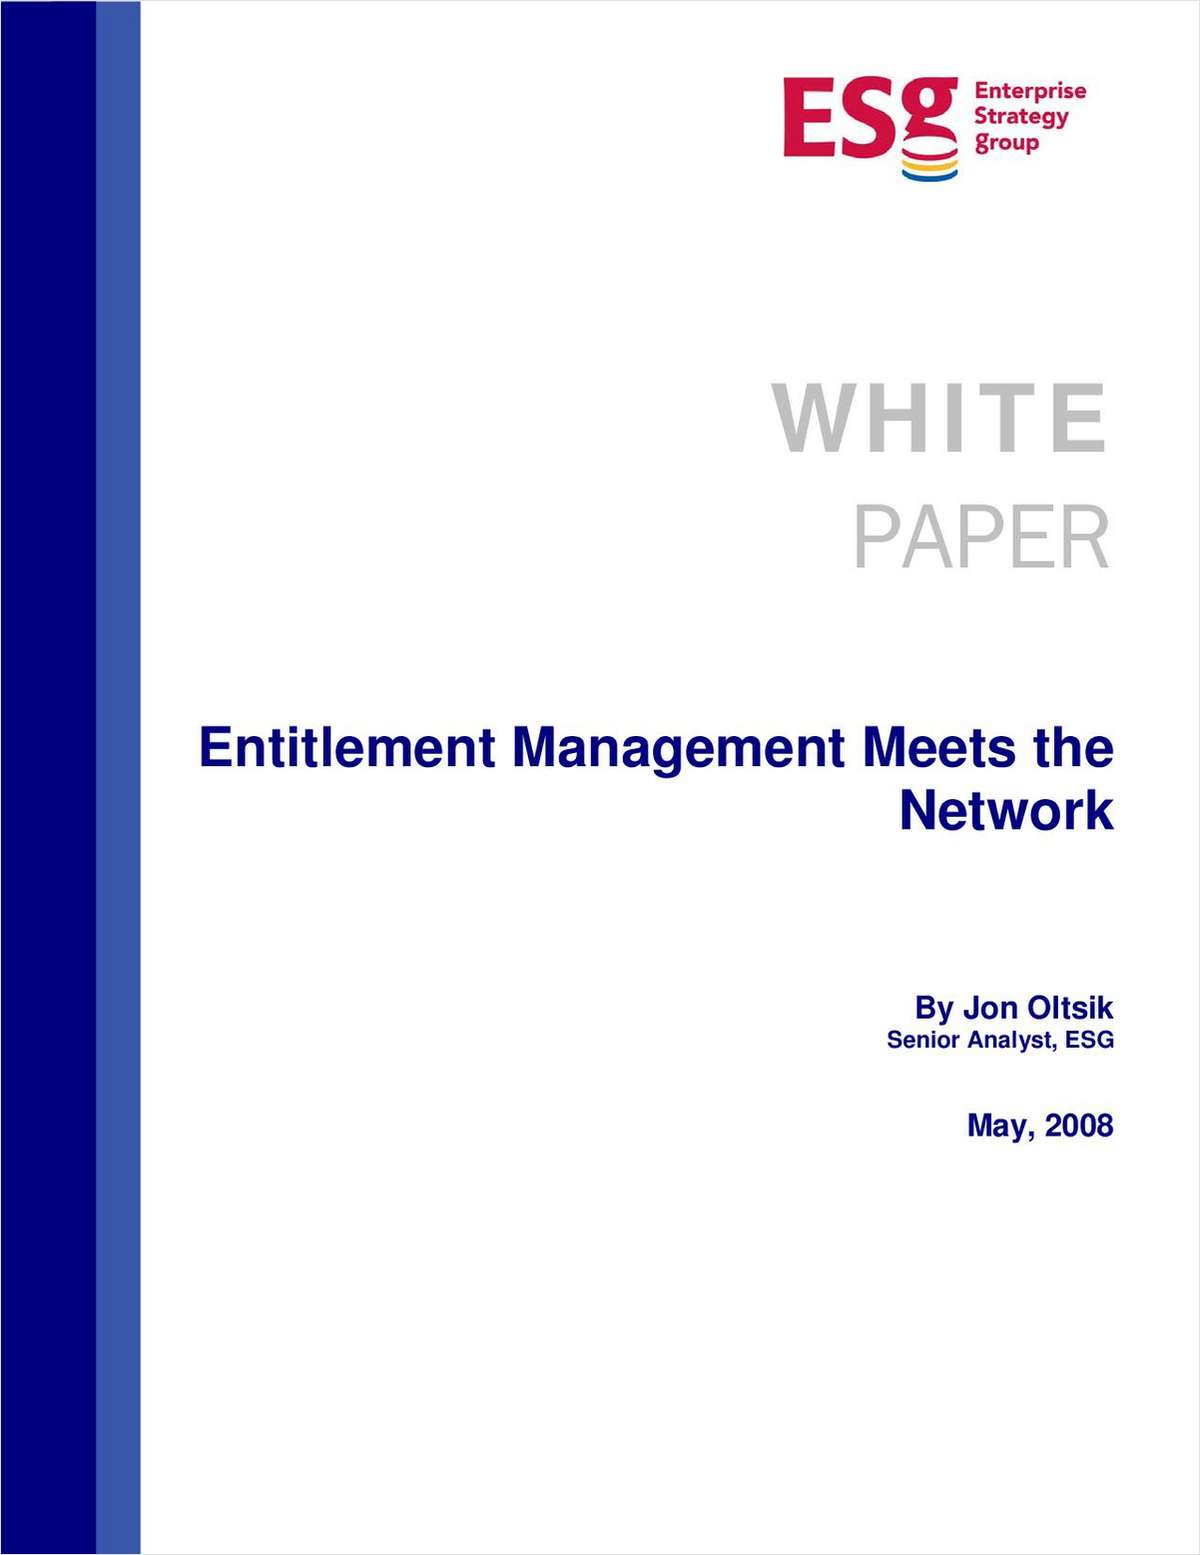 Entitlement Management Meets the Network